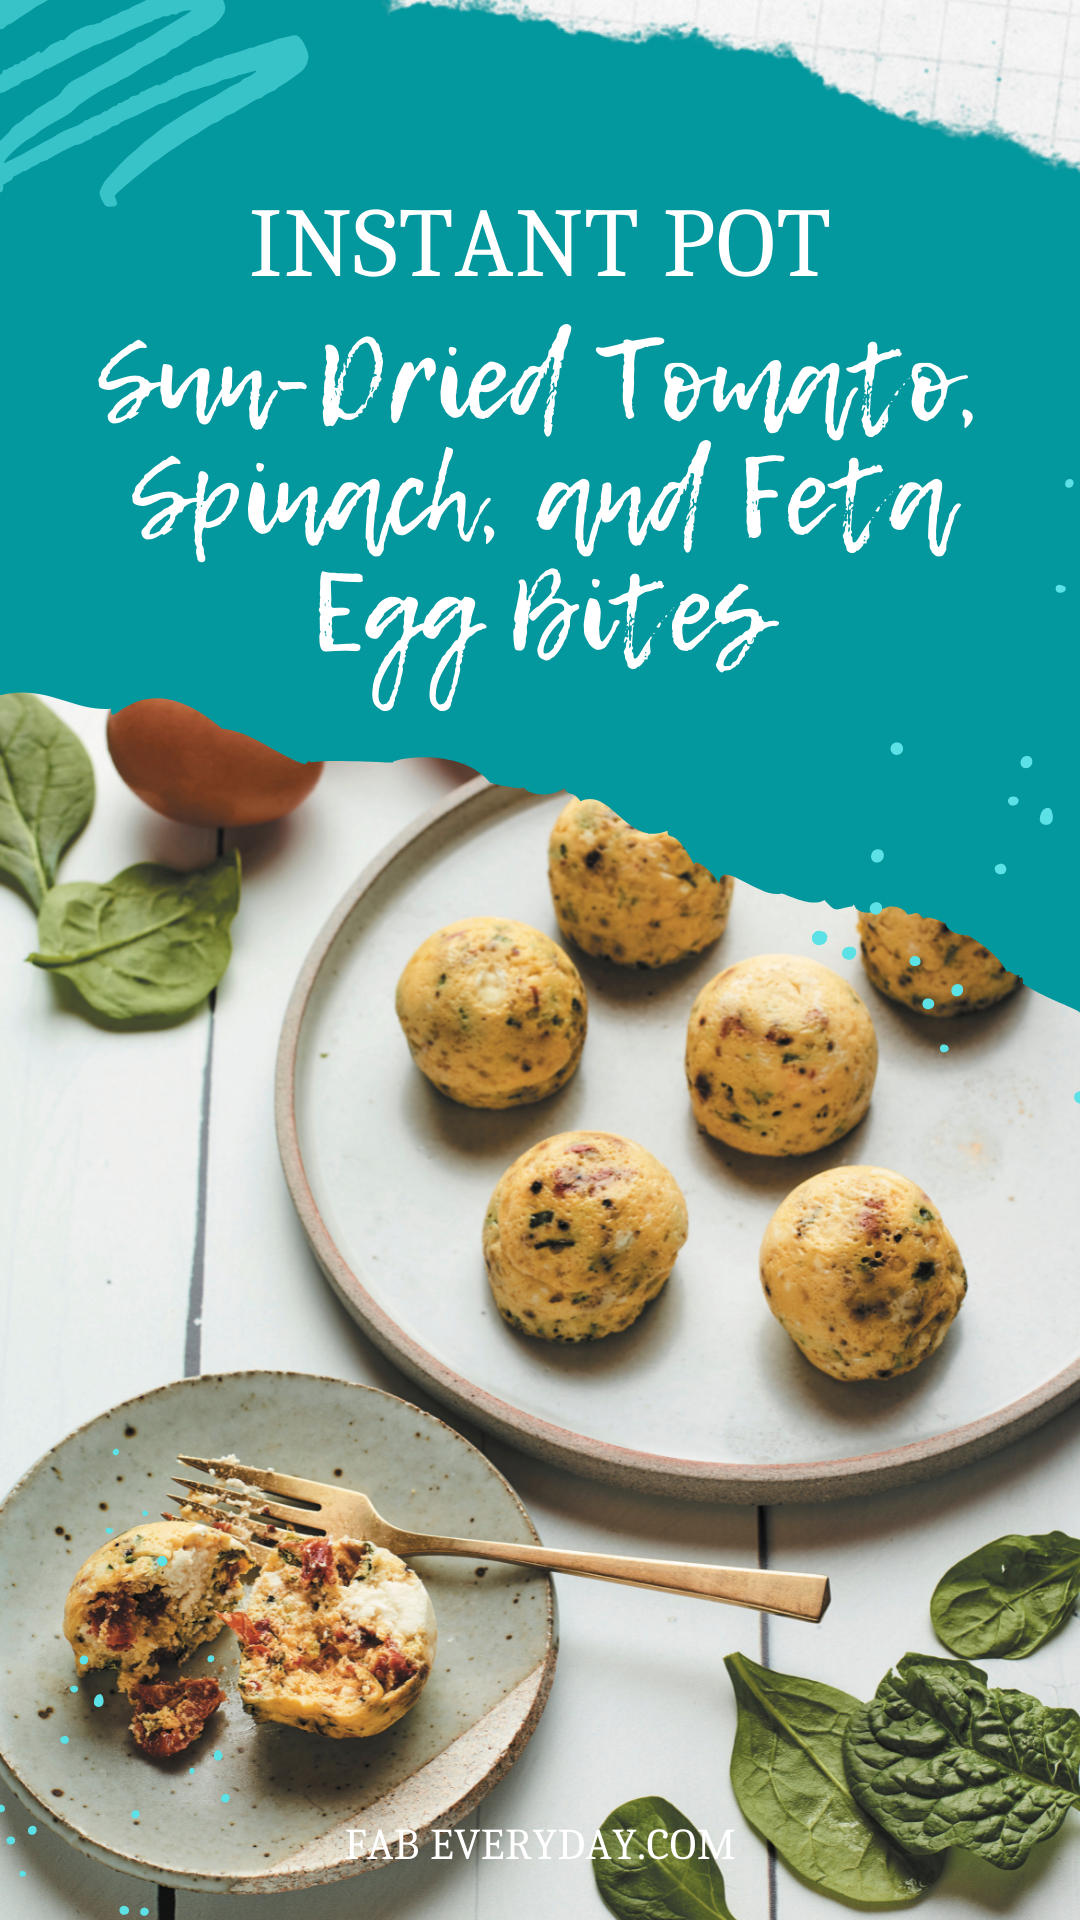 Sun-Dried Tomato, Spinach, and Feta Instant Pot Egg Bites recipe